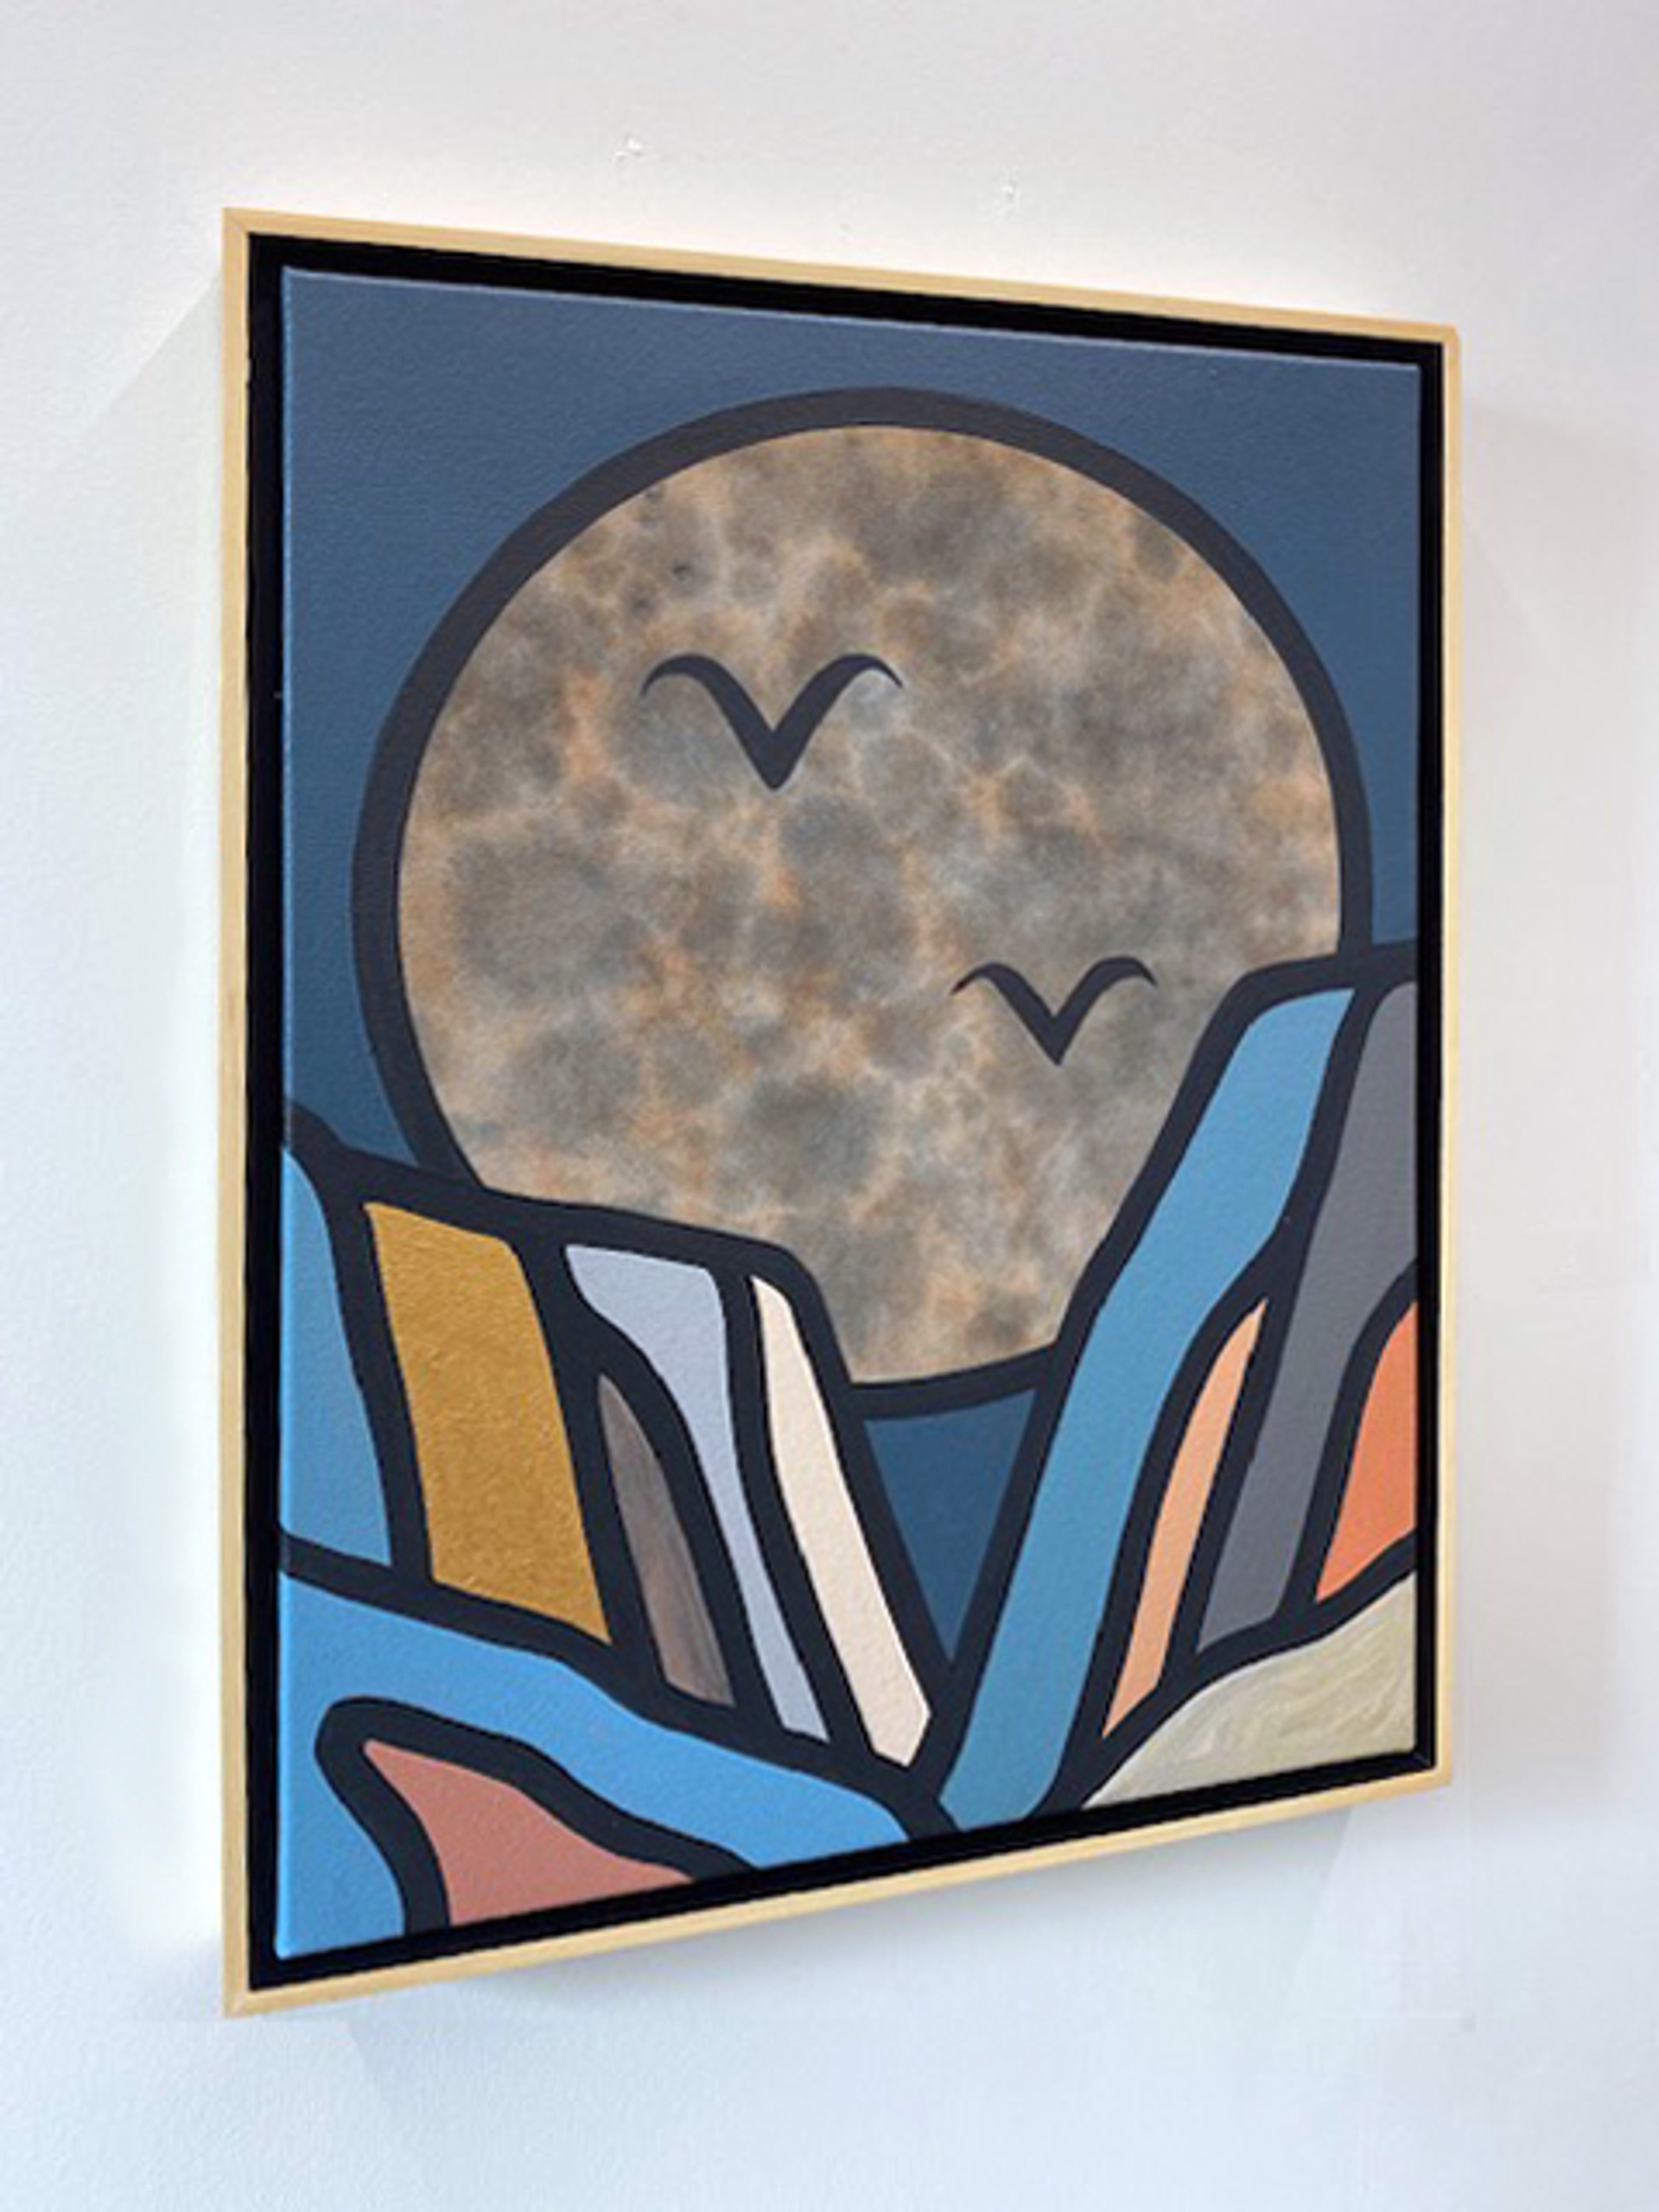 Desert Moon by Tom Jean Webb